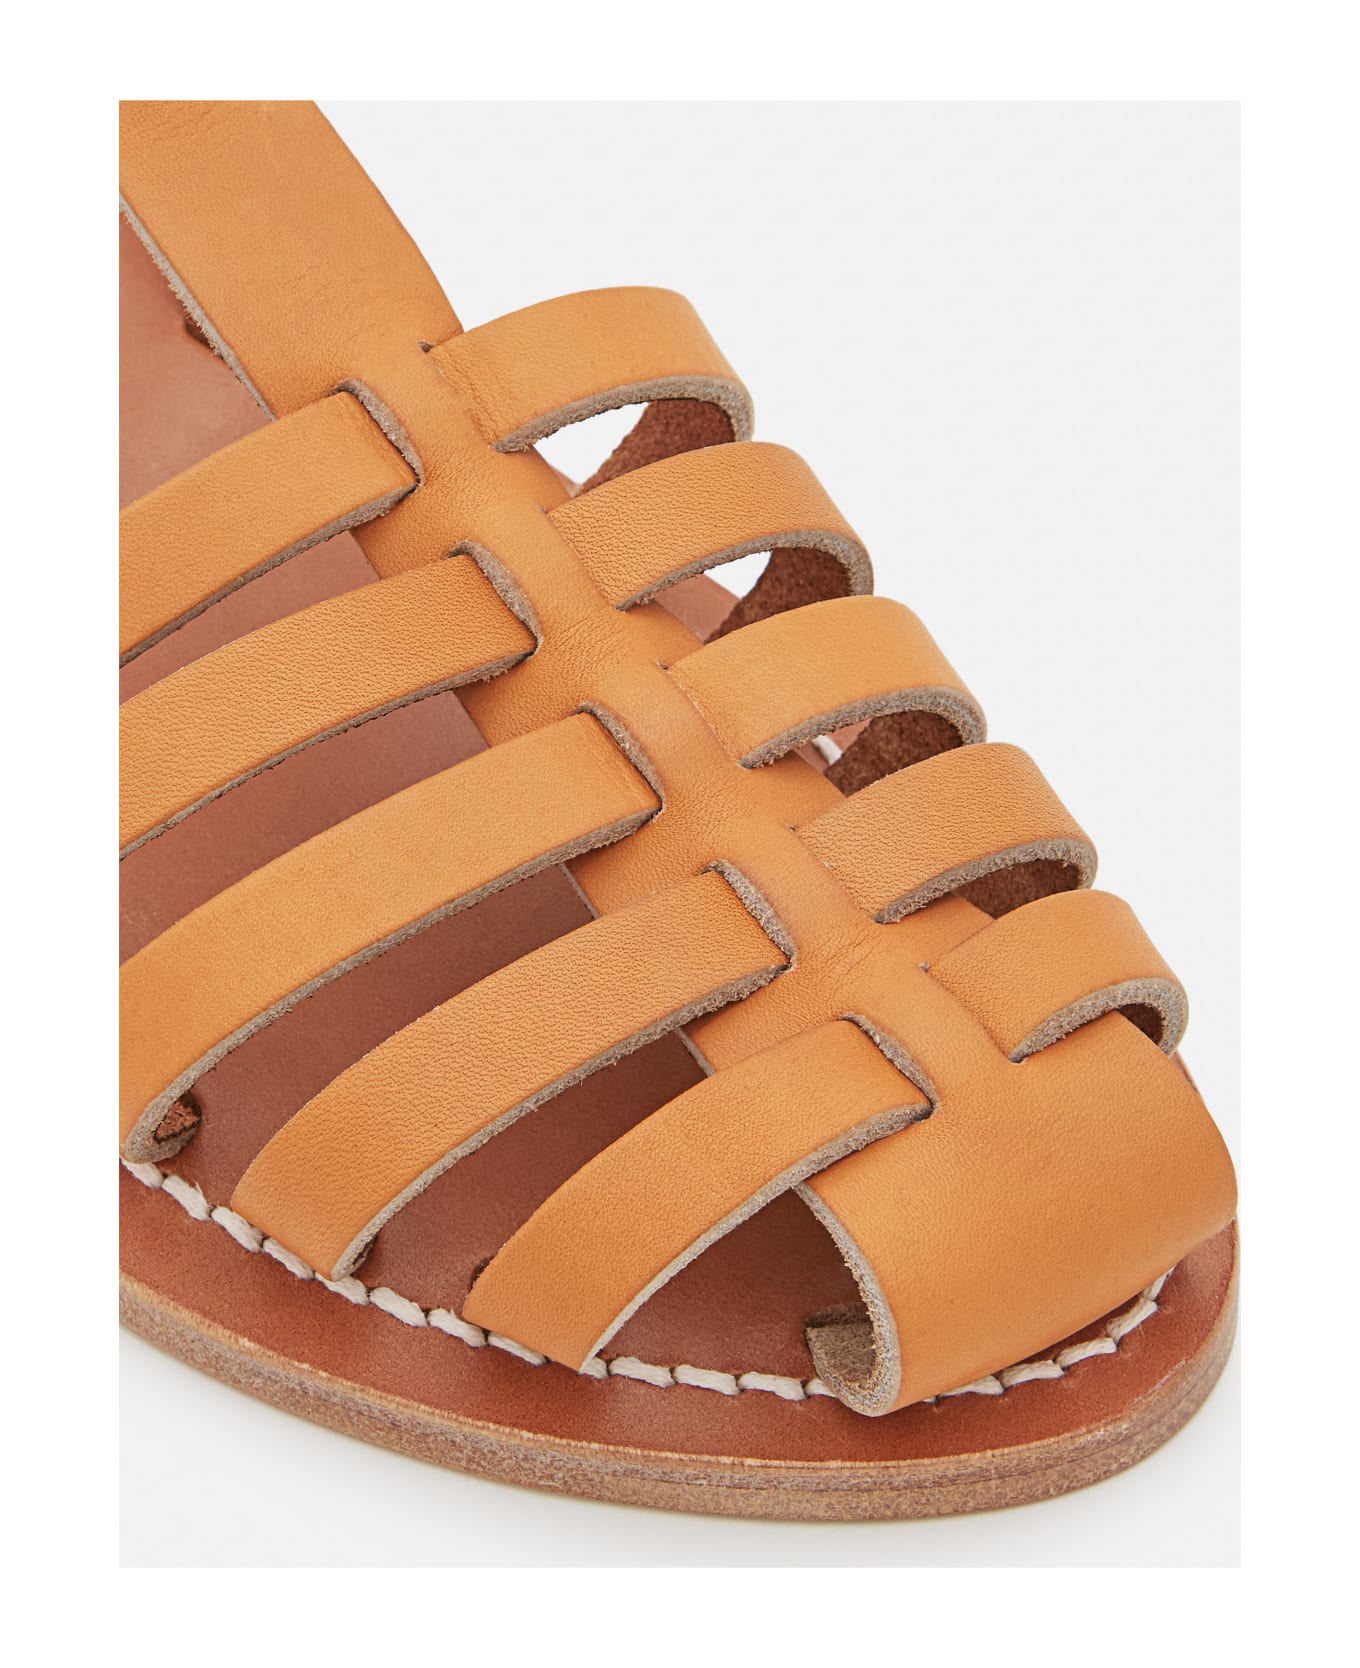 K.Jacques Adrien Leather Sandals - Beige